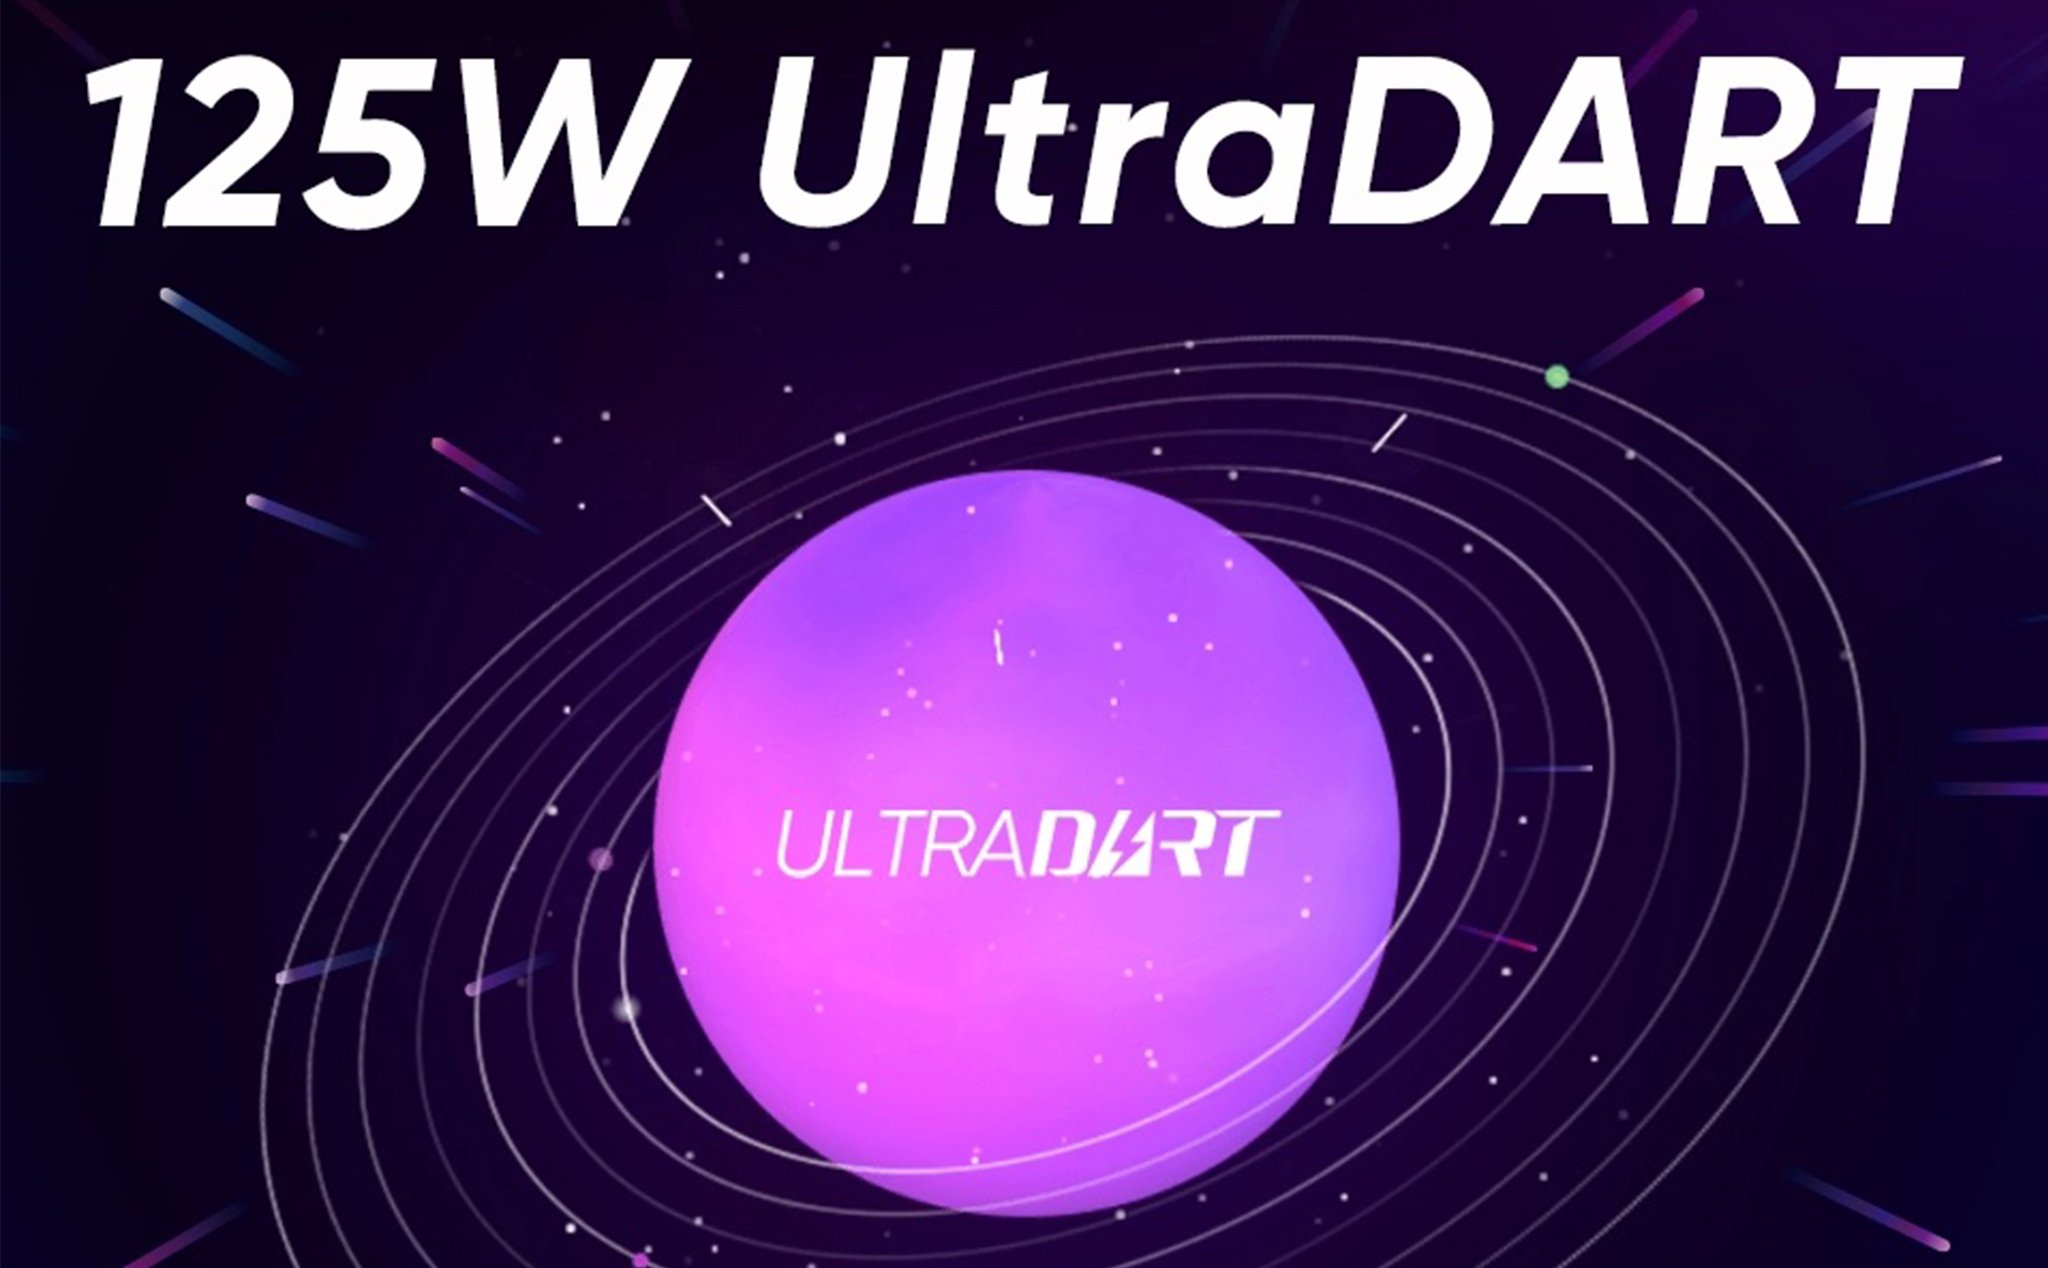 realme ra mắt công nghệ sạc nhanh UltraDART 125W: sạc 3 phút được 33%, 20 phút đầy pin